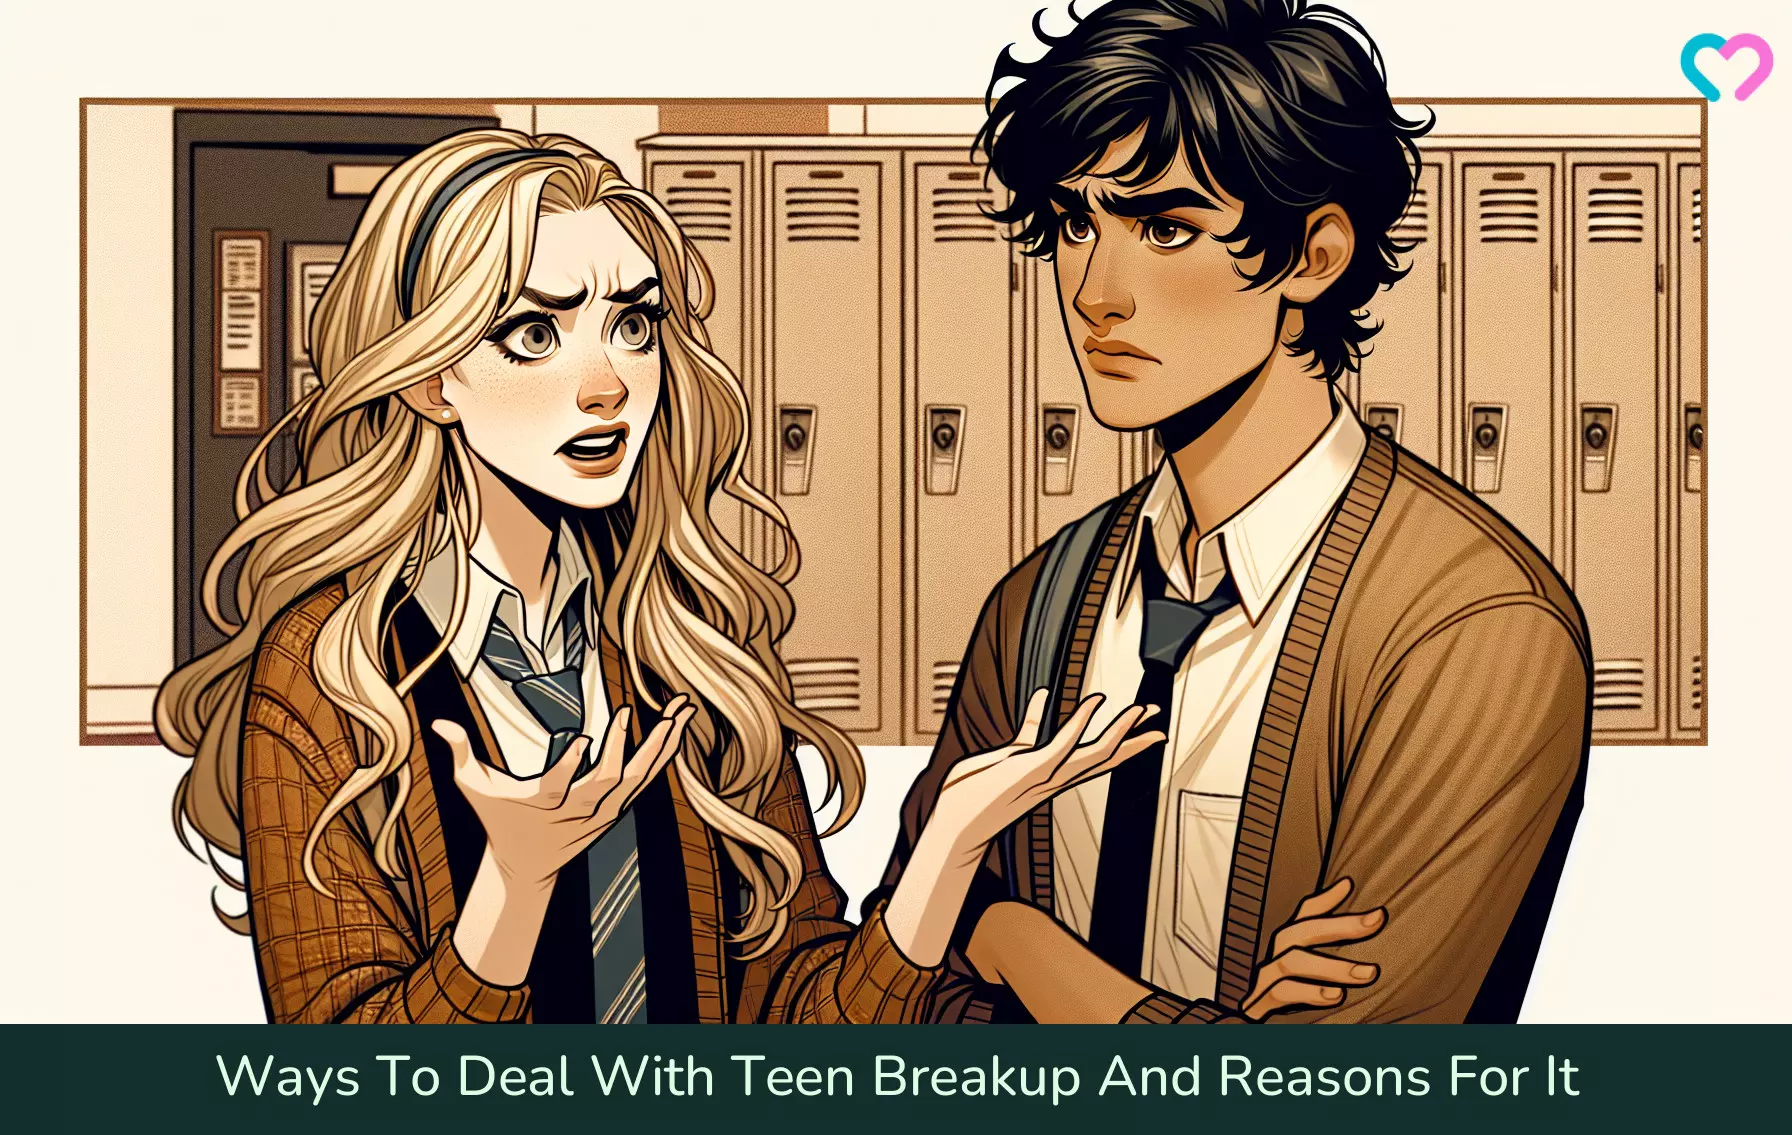 Teenage Breakup_illustration